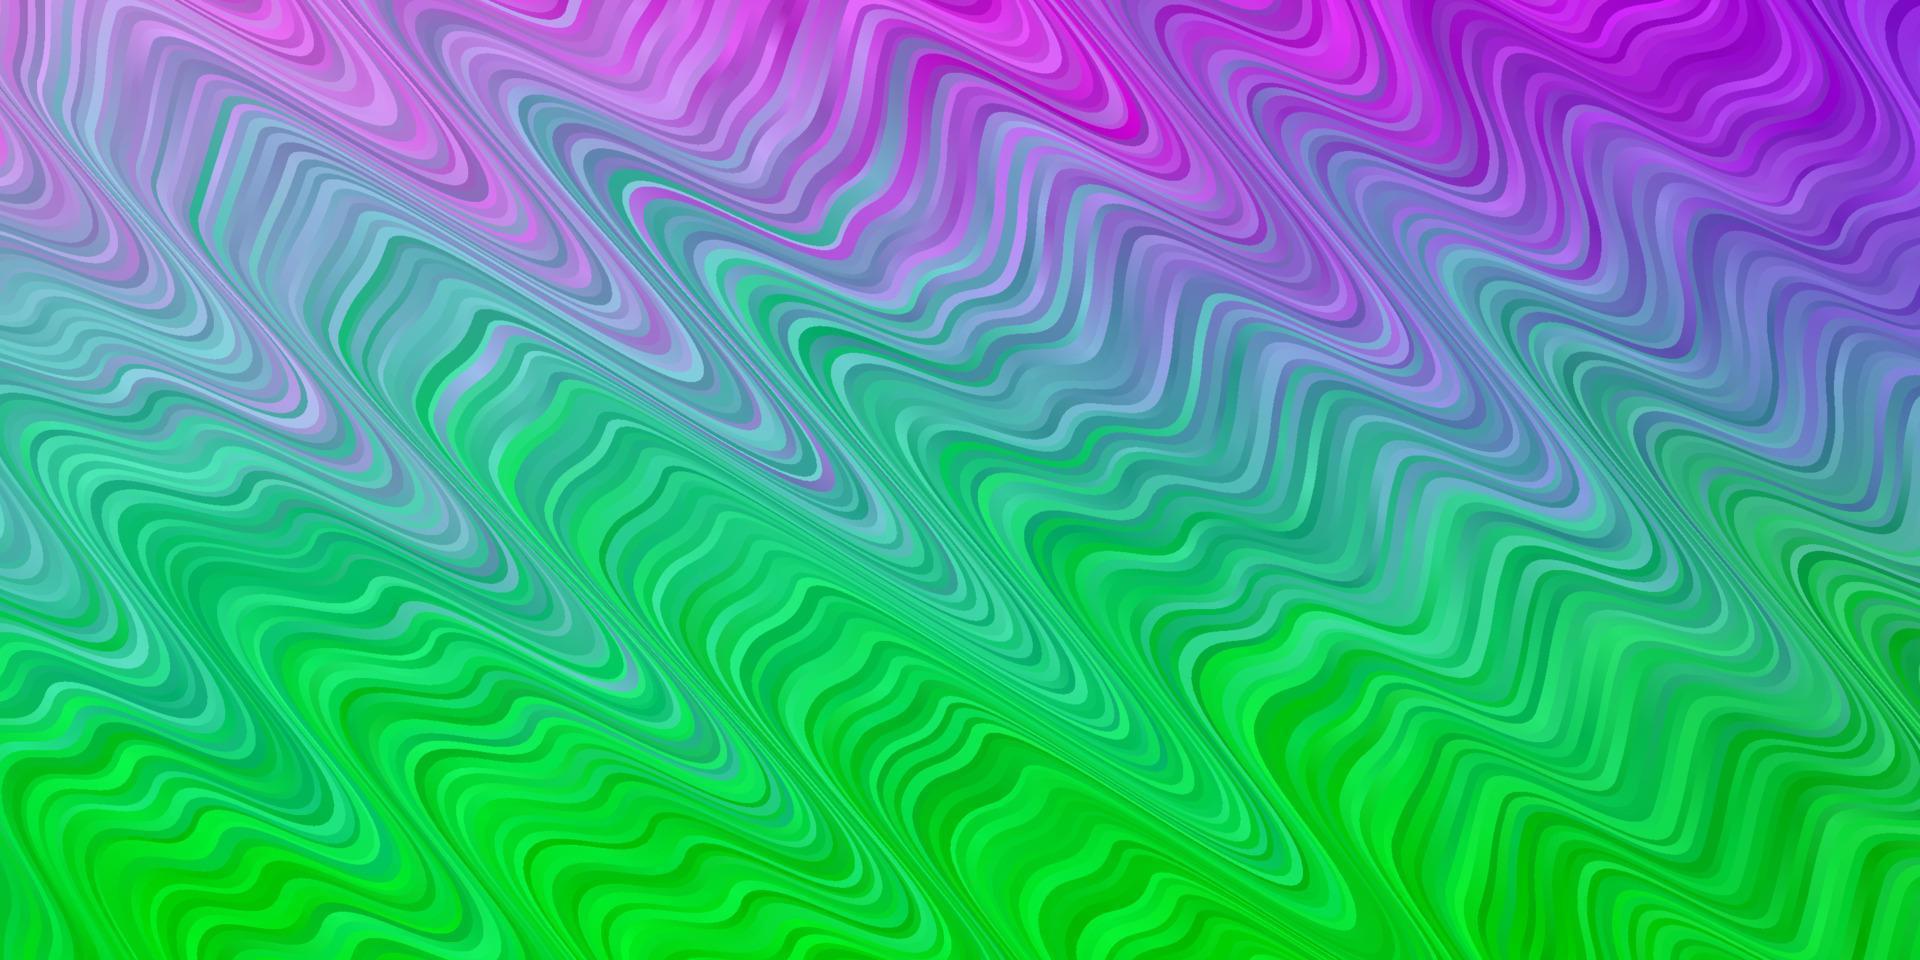 hellrosa, grüner Vektorhintergrund mit gebogenen Linien. vektor